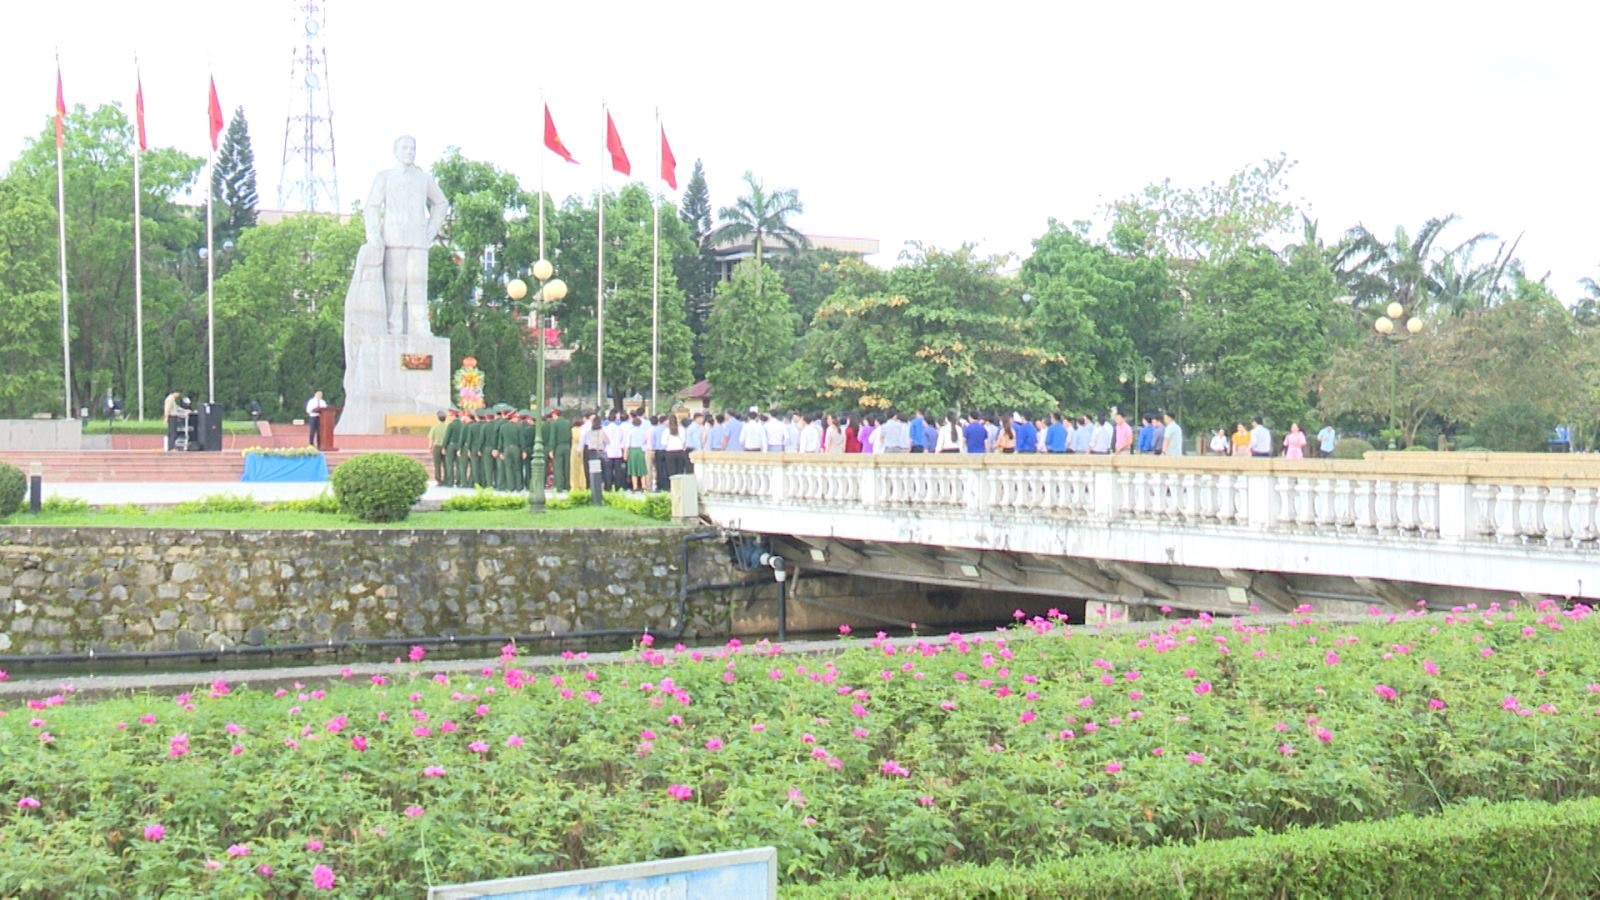 Buổi lễ kỷ niệm 114 năm Ngày sinh Tổng Bí thư Lê Duẩn được Ban Thường vụ Thành ủy Đông Hà tổ chức trang trọng